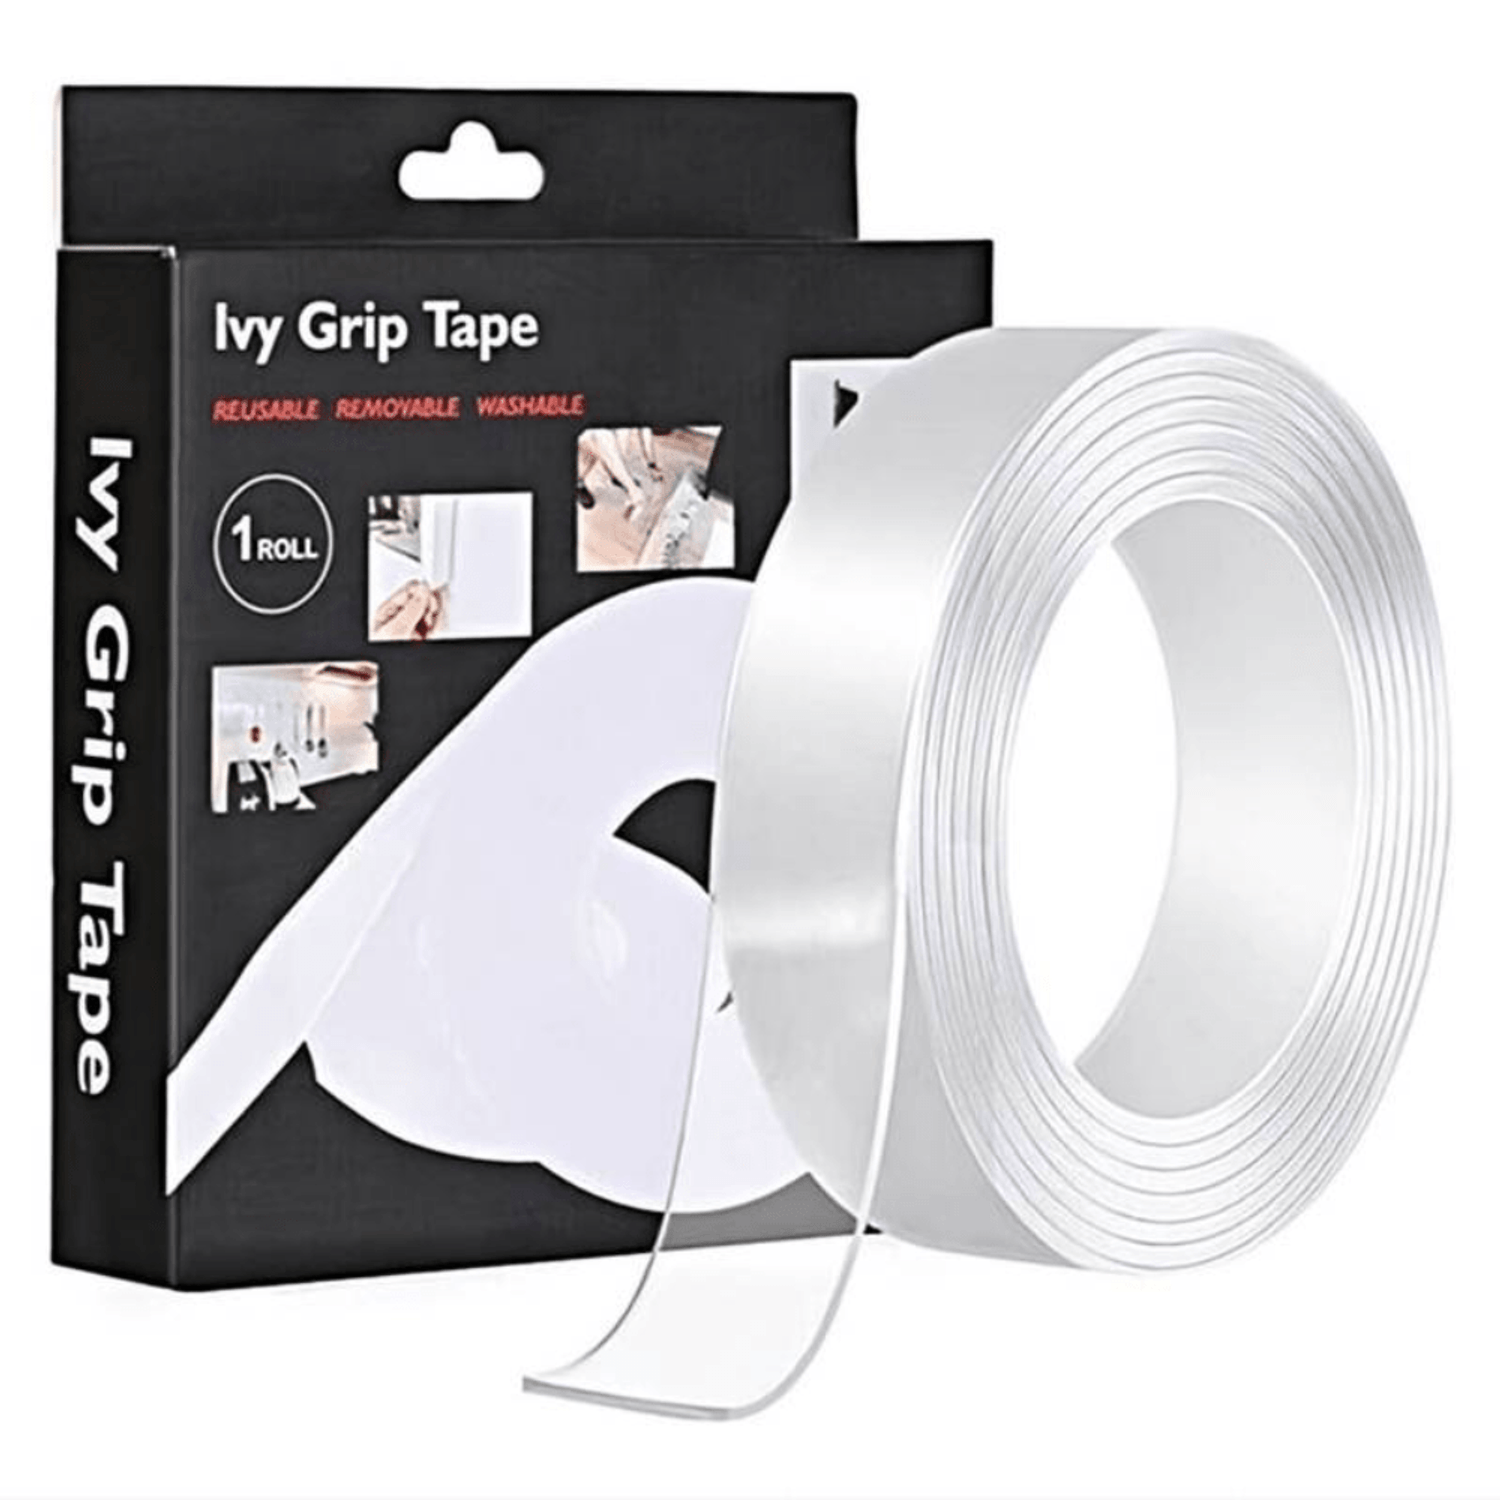 Una nueva ocurrencia para hacer con la cinta nano tape